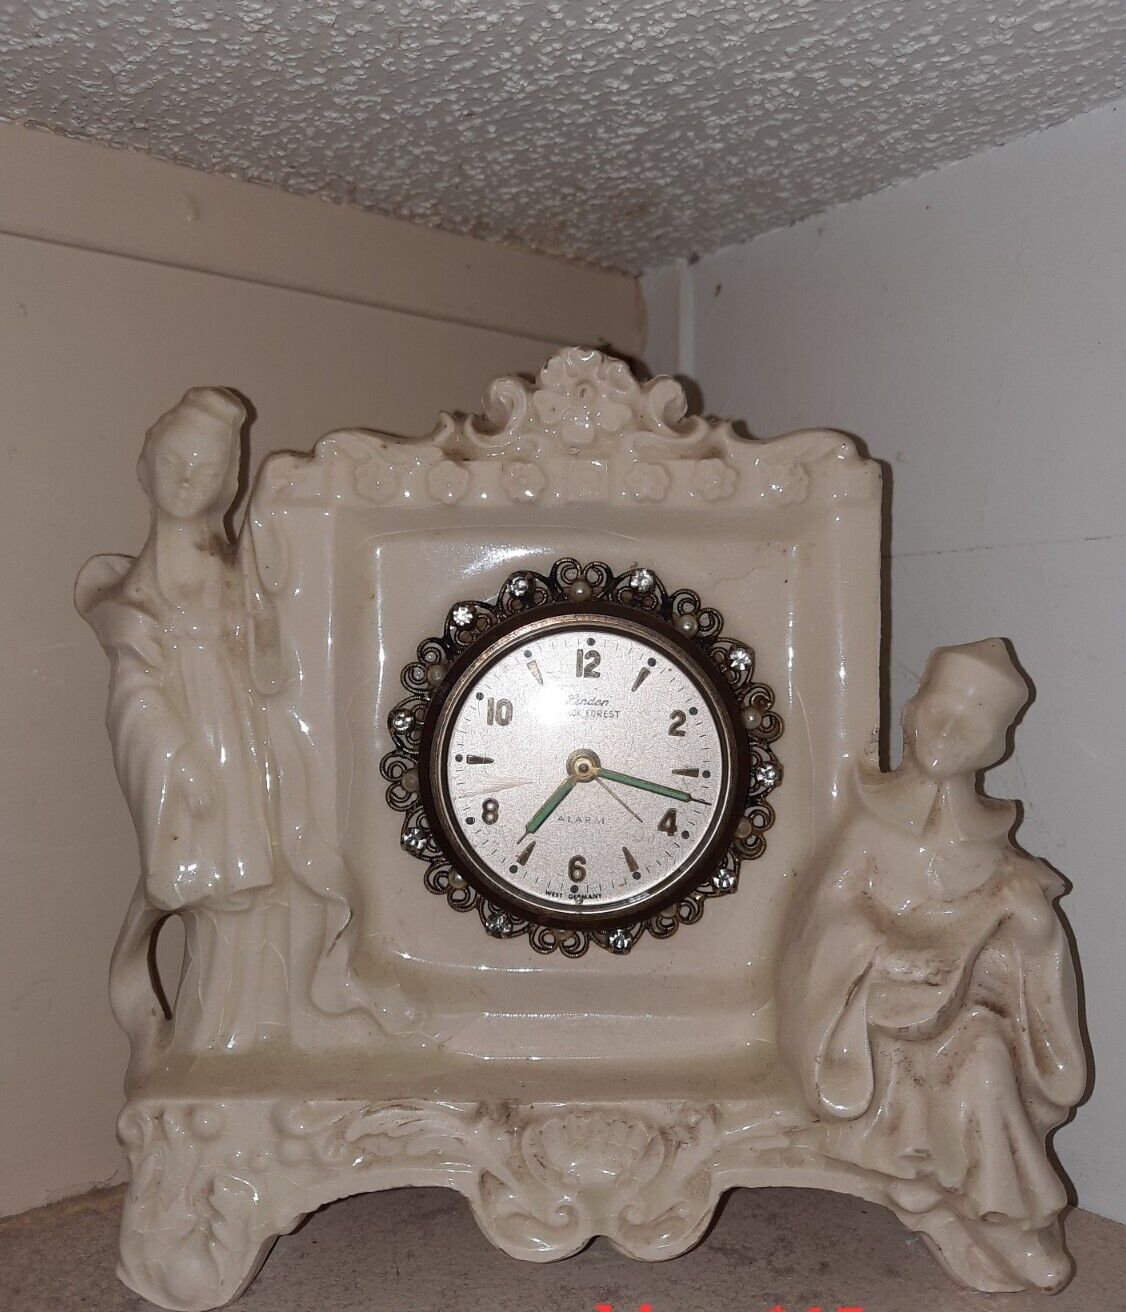  vintage ceramic porcelain linden black forest alarm clock works